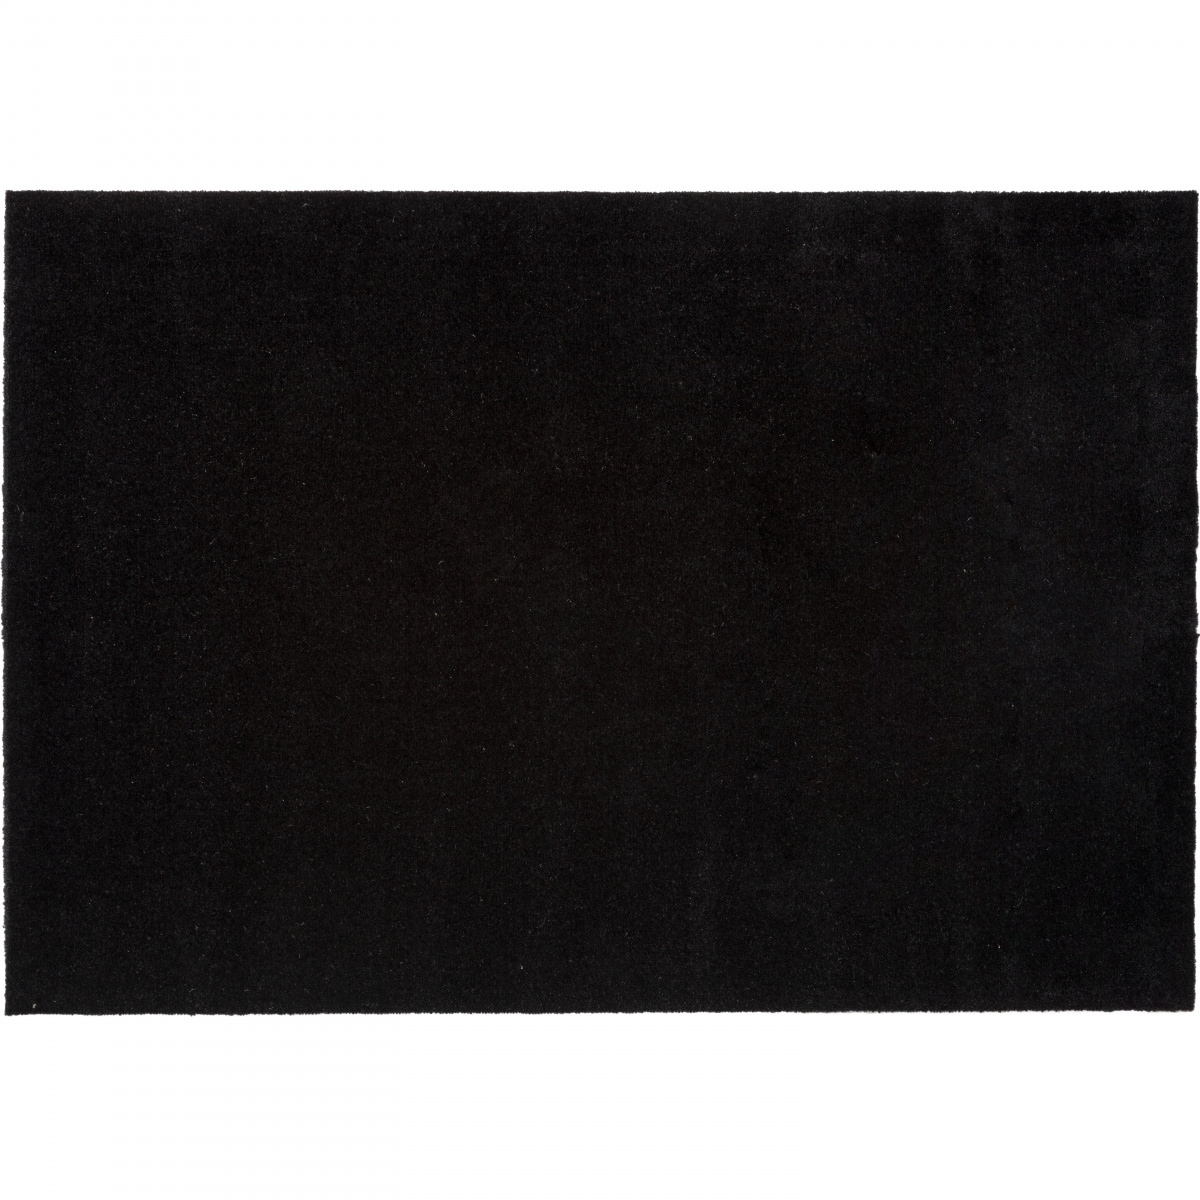 Tica deurmat, zwart - 90x130